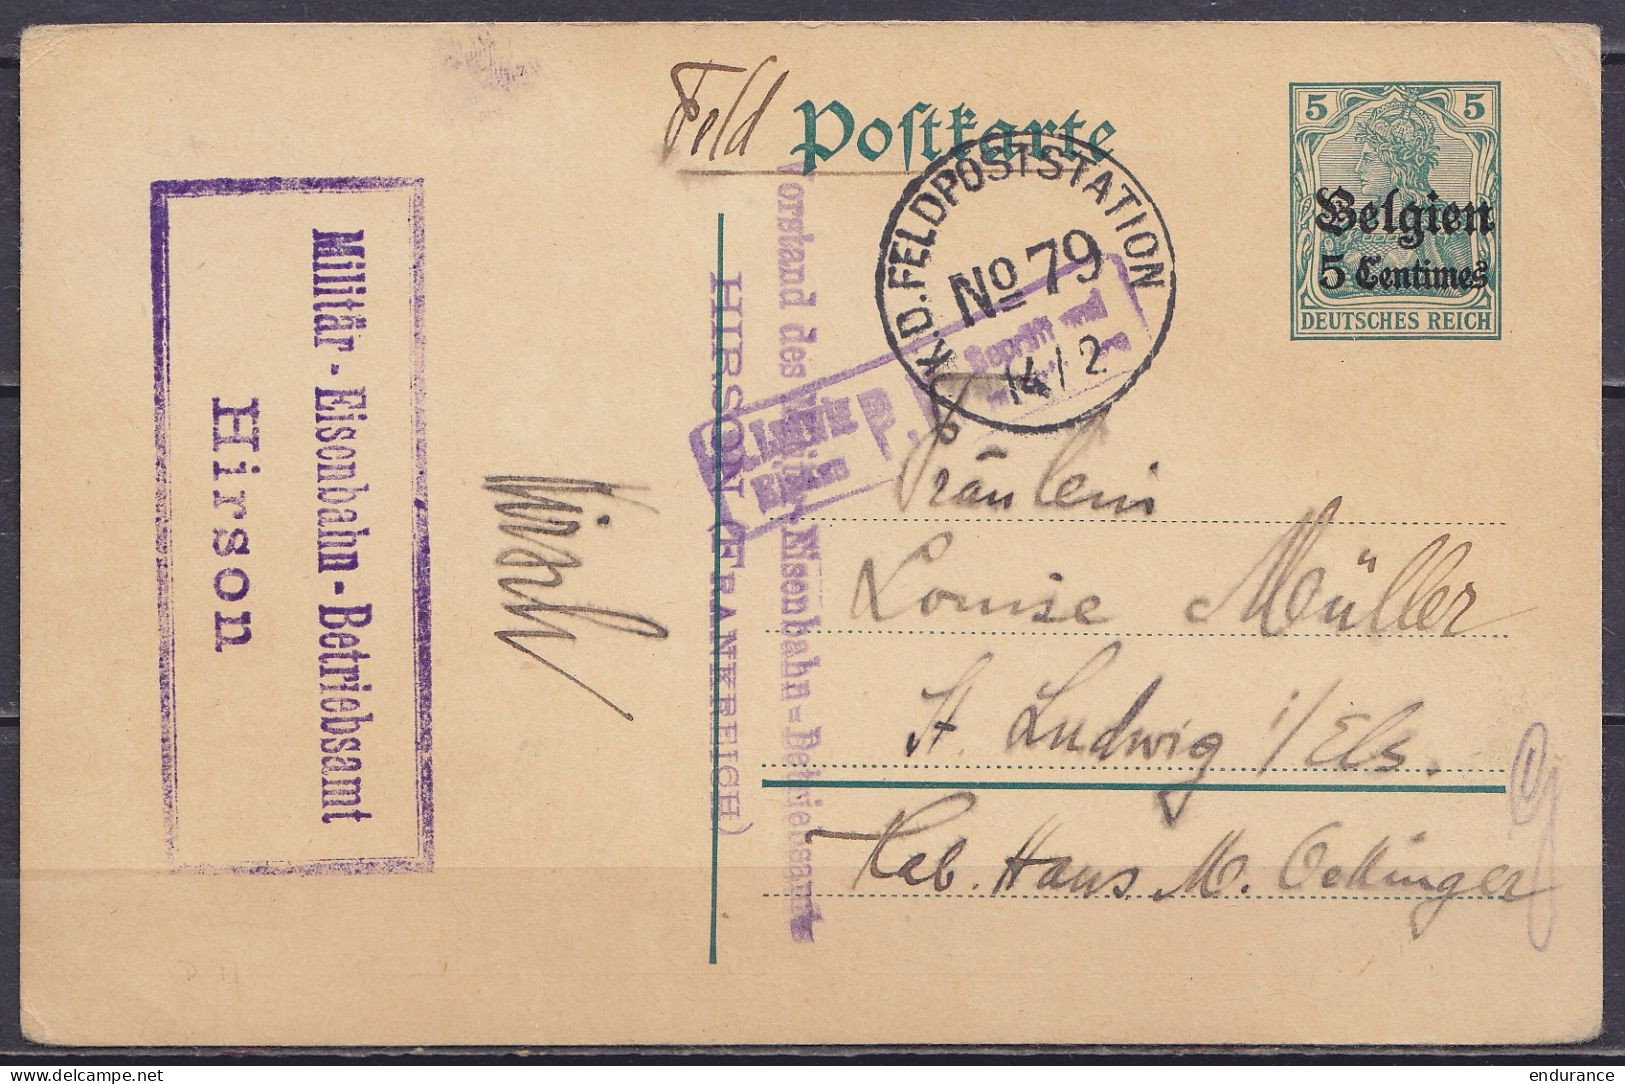 EP CP 5c Vert (OC2) Càd "K.D. FELDPOSTSTAION N°79 /14/2" (1916) Pour ST. LUDWIG Elsass (St-Louis Alsace) - Cachet [Milit - Duitse Bezetting